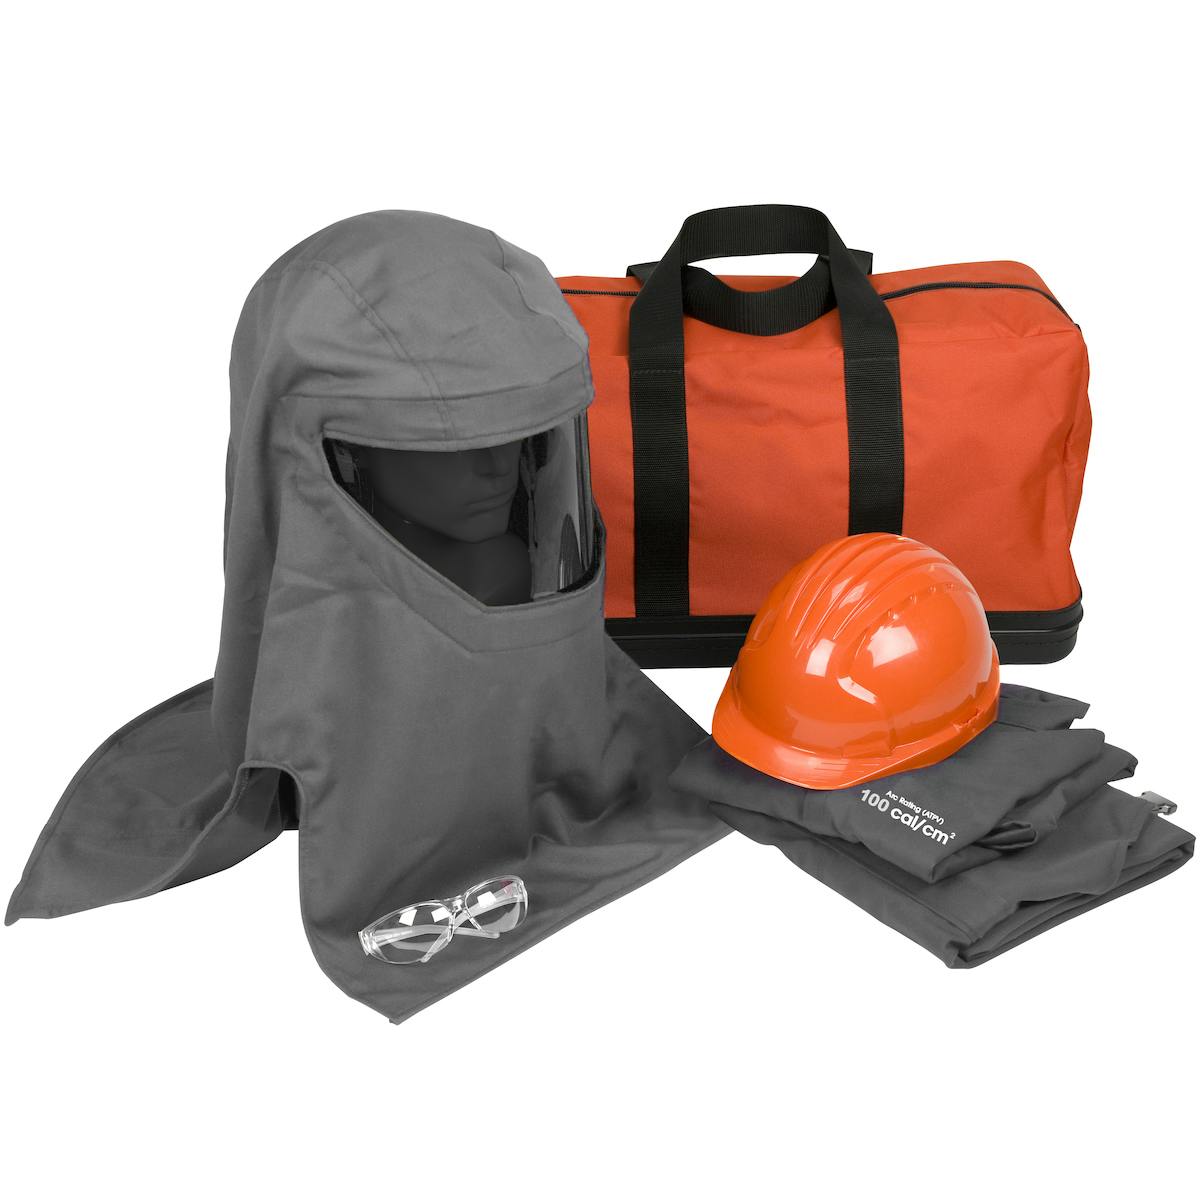 PIP® PPE 4 Arc Flash Kit - 100 Cal/cm2 (9150-52730)